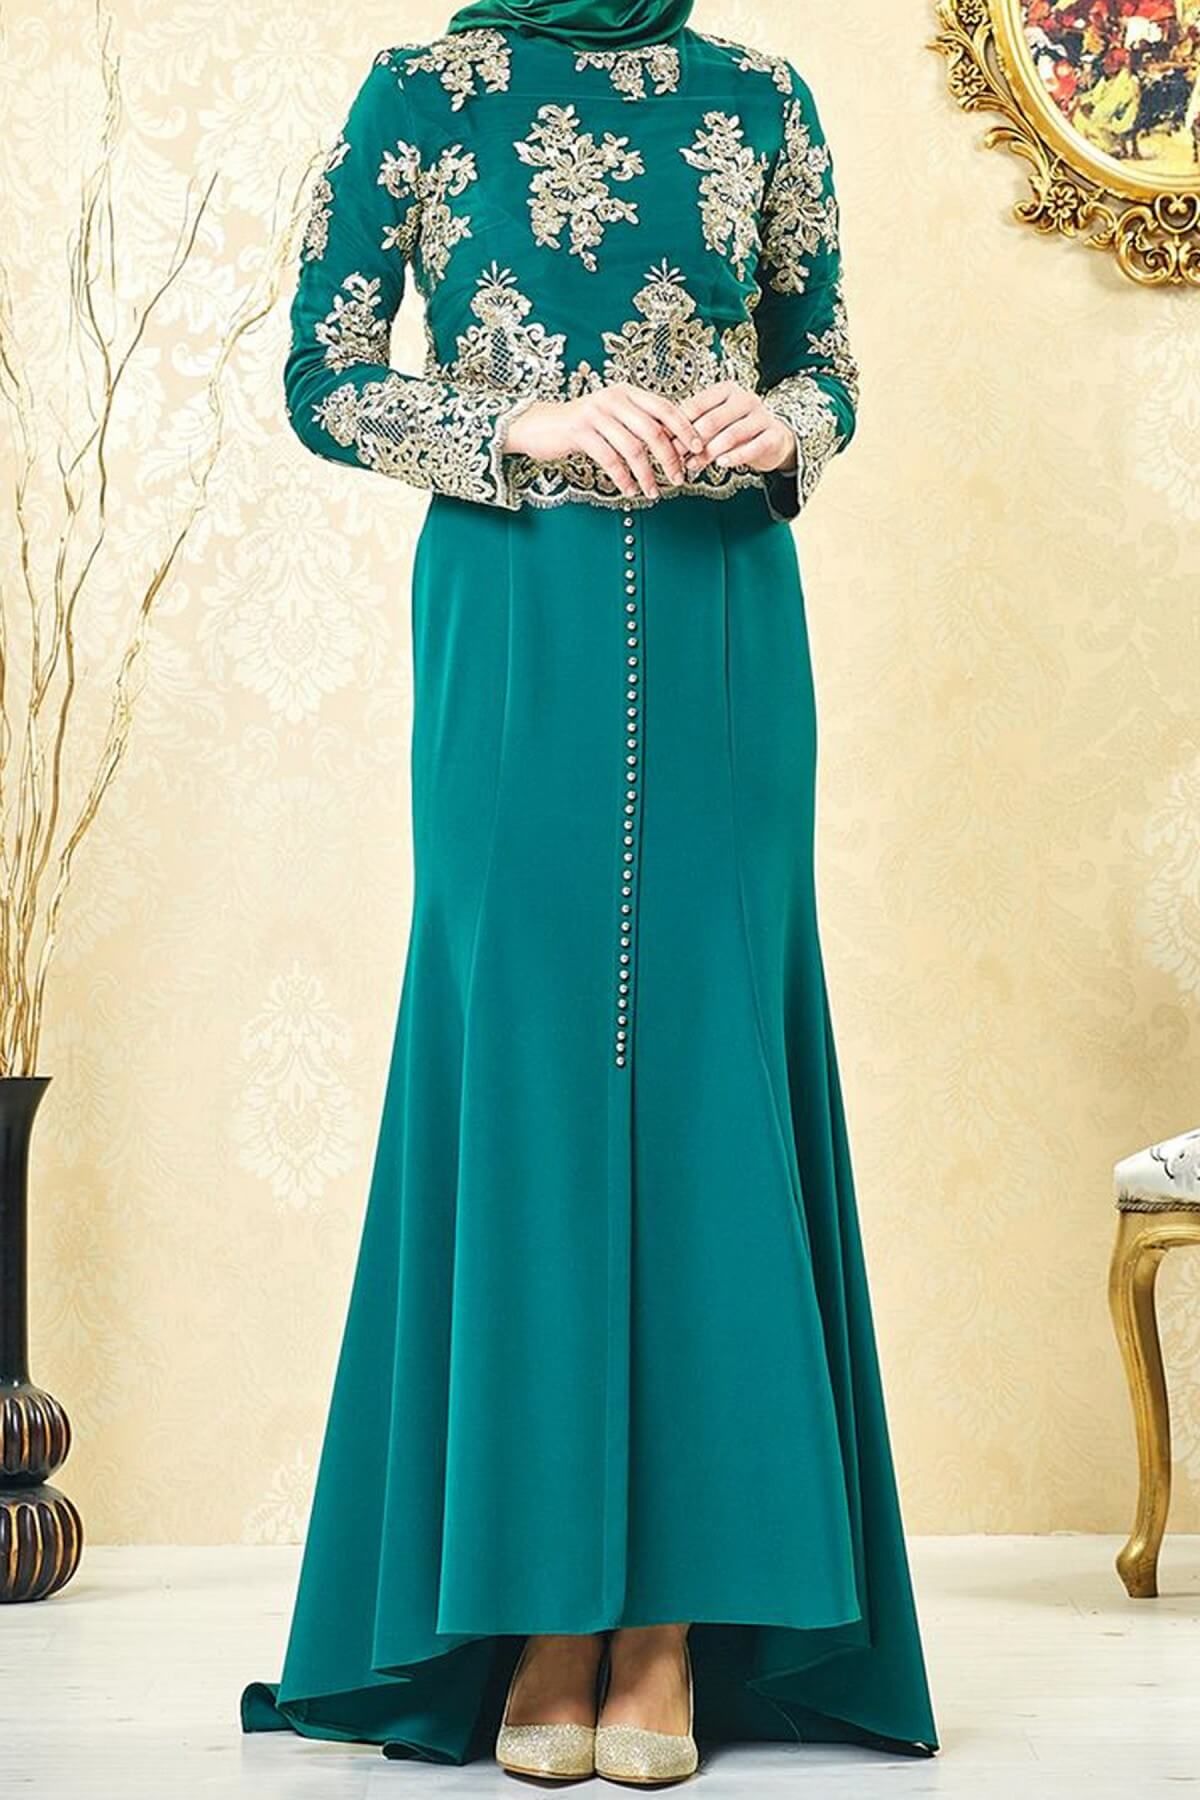 LADYNUR Kadın Abiye Elbise Yeşil 3001-21